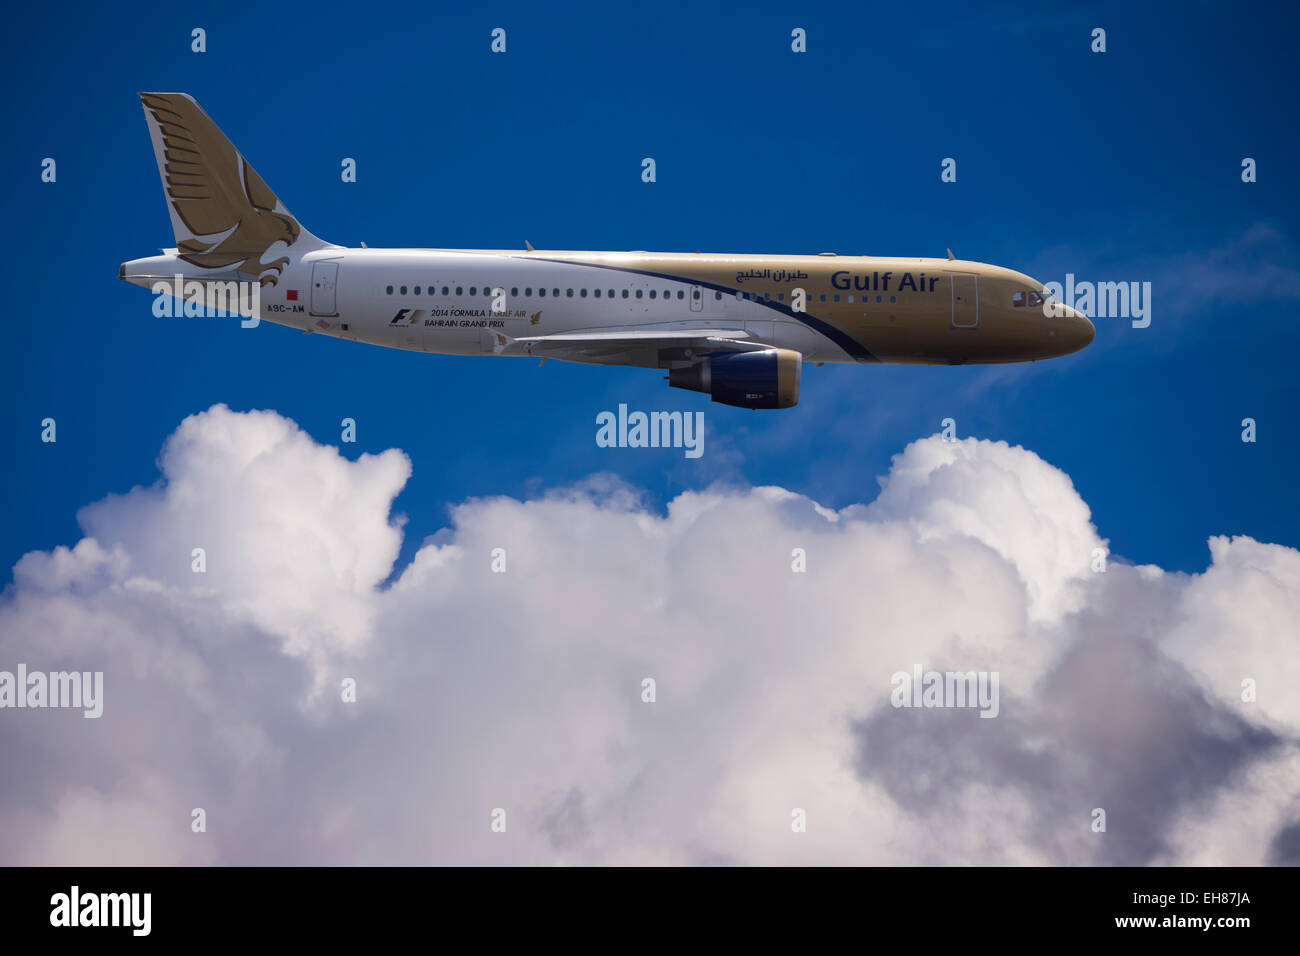 A9C-AM Gulf Air Airbus A320-214 in flight Stock Photo